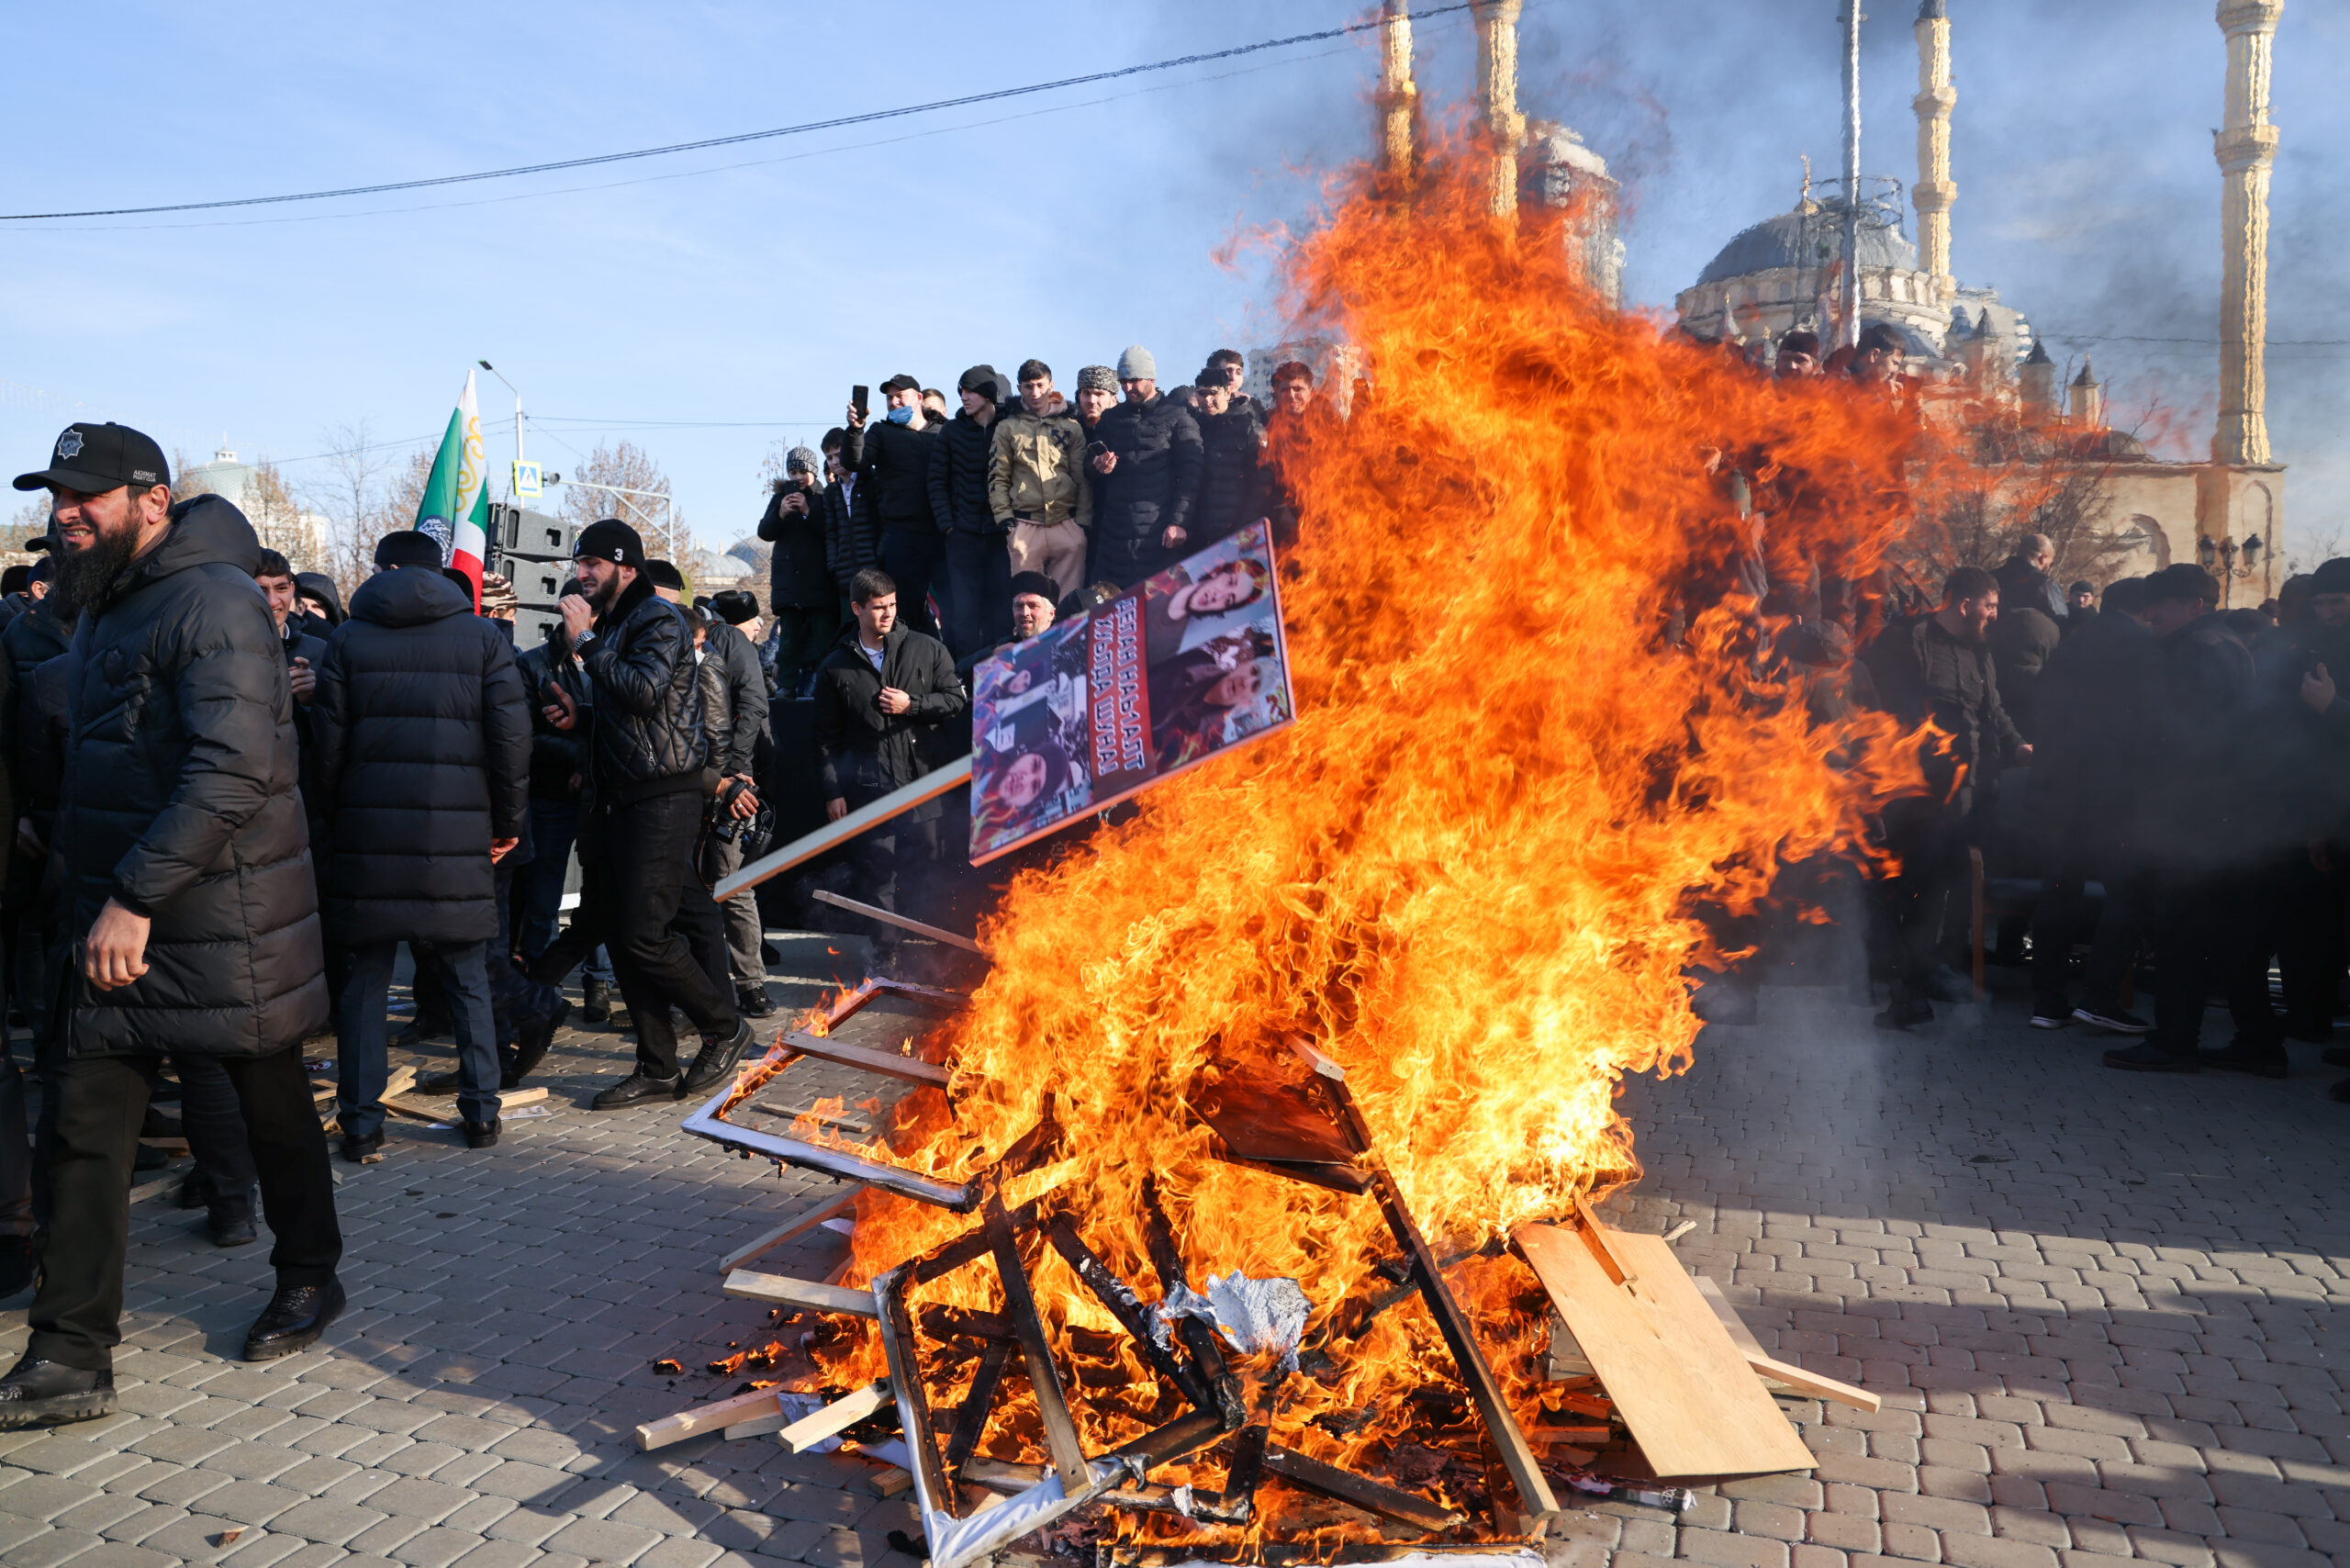 Люди сжигают плакаты и портреты во время акции протеста в центре Грозного против семьи Янгулбаевых, 2 февраля 2022 года. Фото Yelena Afonina/TASS/Scanpix/Leta